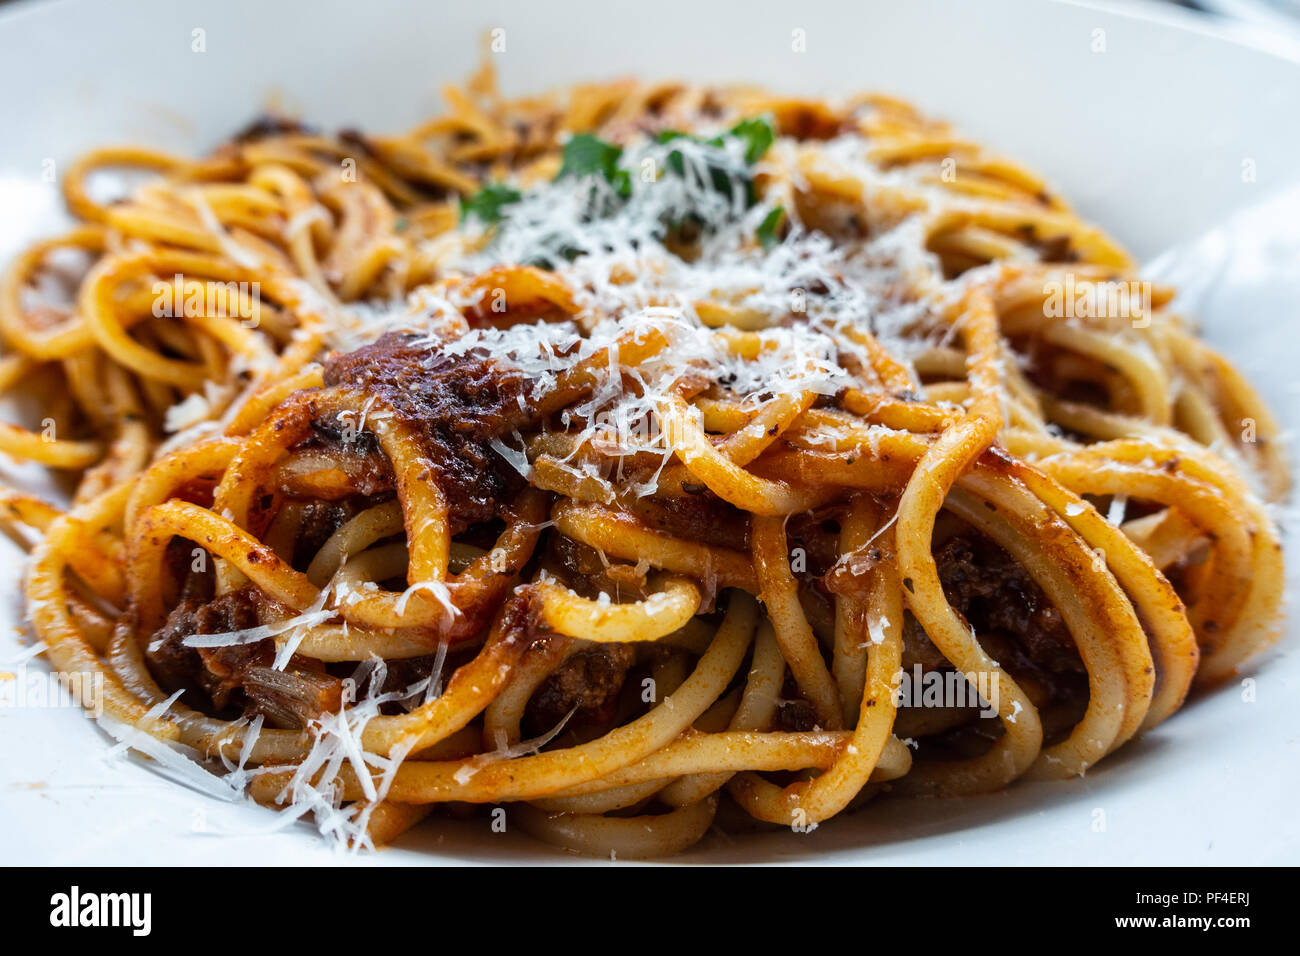 Una ciotola di spaghetti bolognese server in una vaschetta bianca in un ristorante italiano. Foto Stock